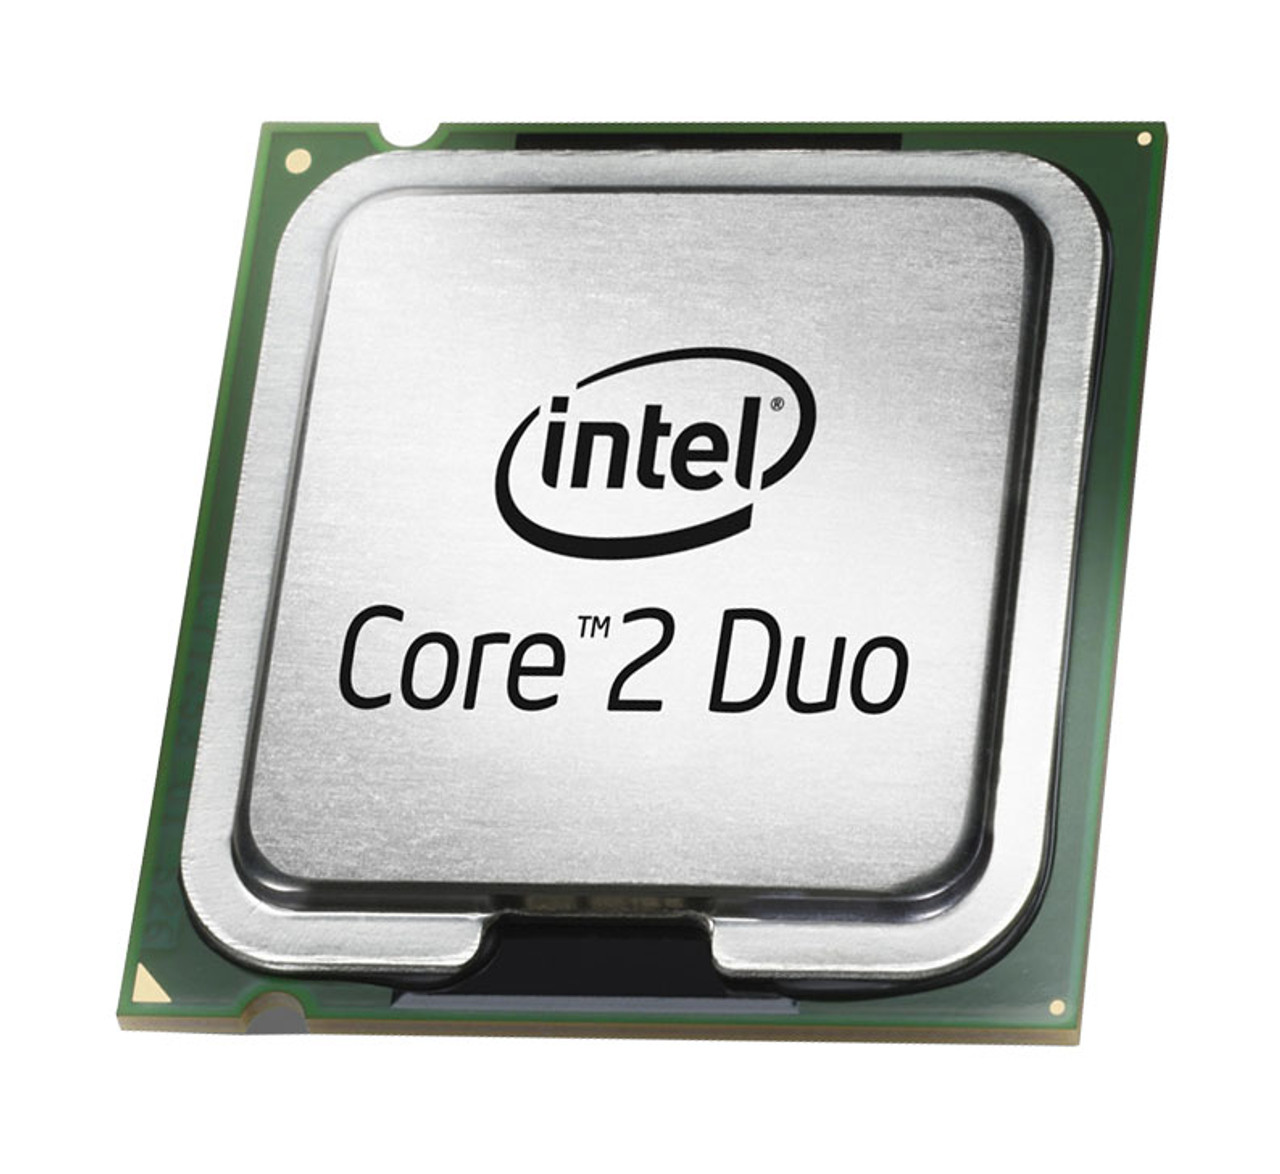 223-1839 - Dell 2.20GHz 800MHz FSB 2MB L2 Cache Intel Core 2 Duo E4500 Processor for Dimension 9200